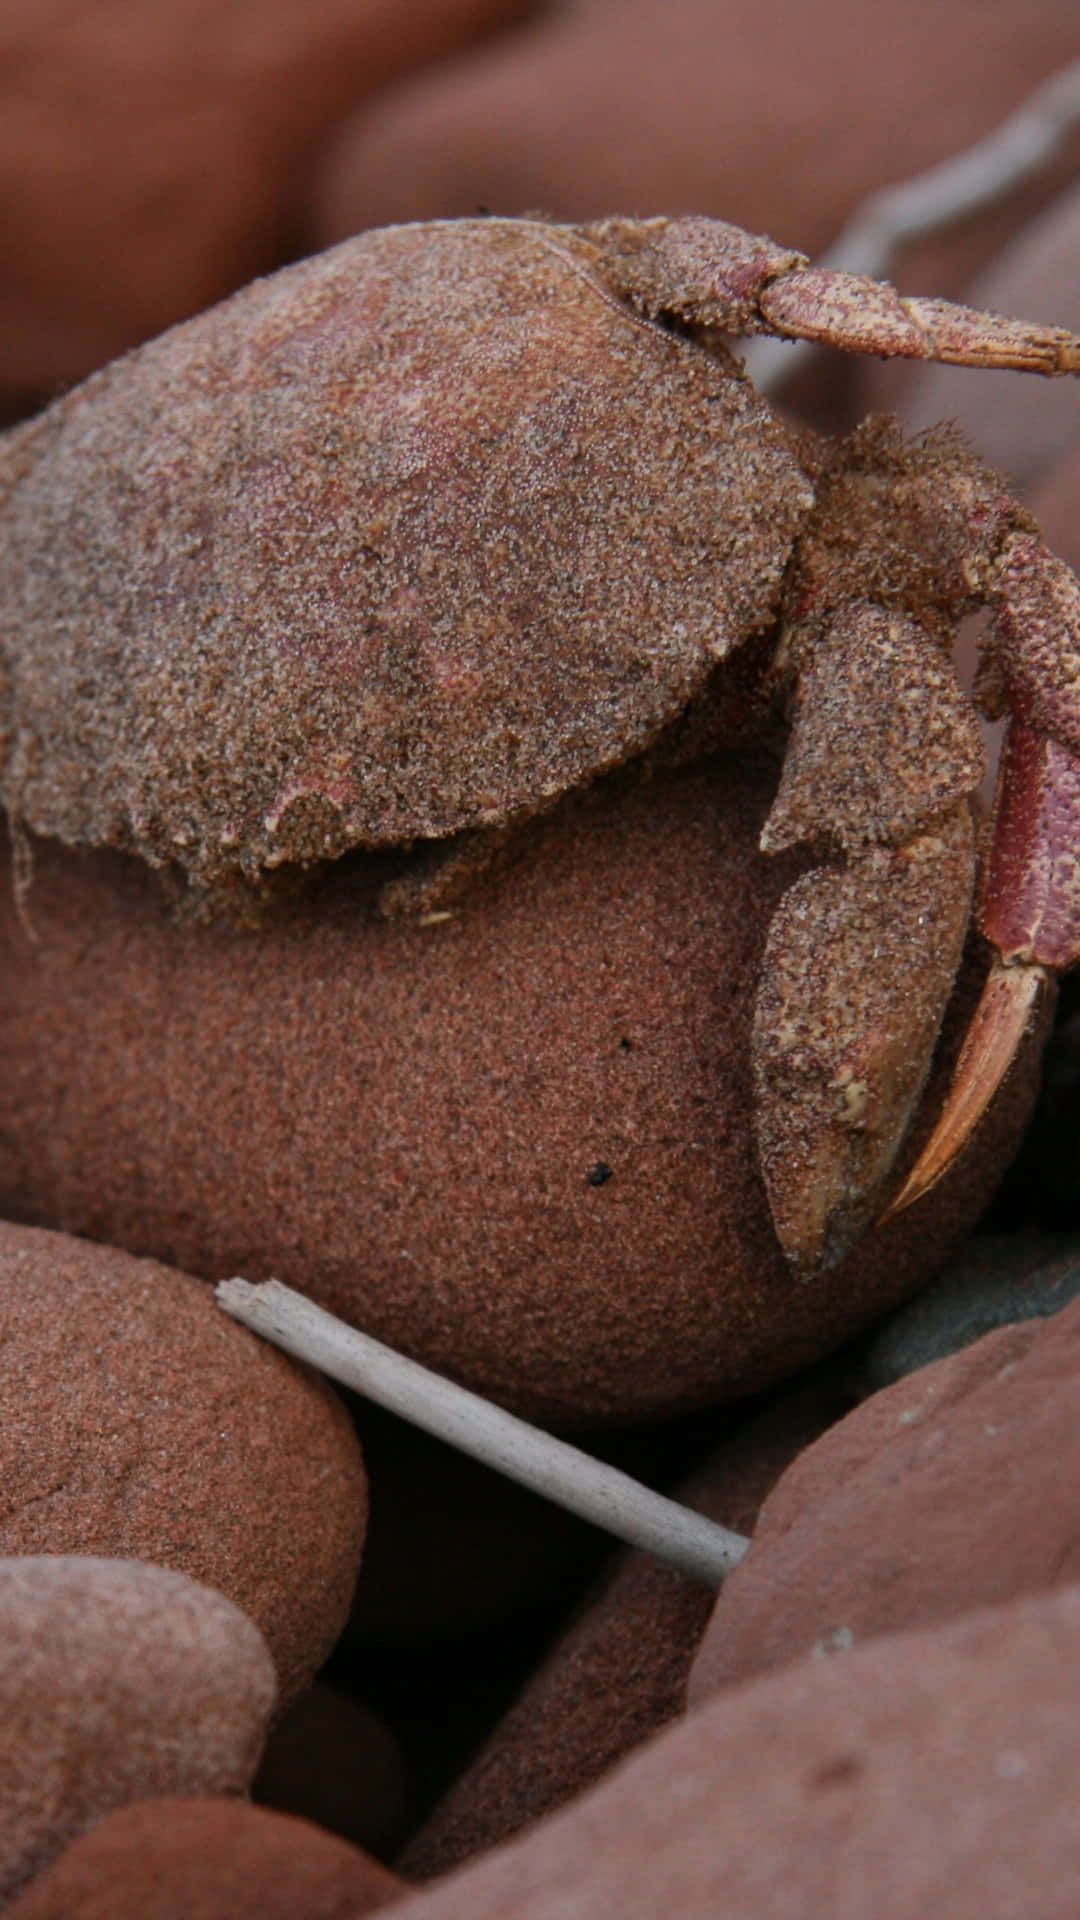 Brown Crab Camouflagedon Rocks.jpg Wallpaper